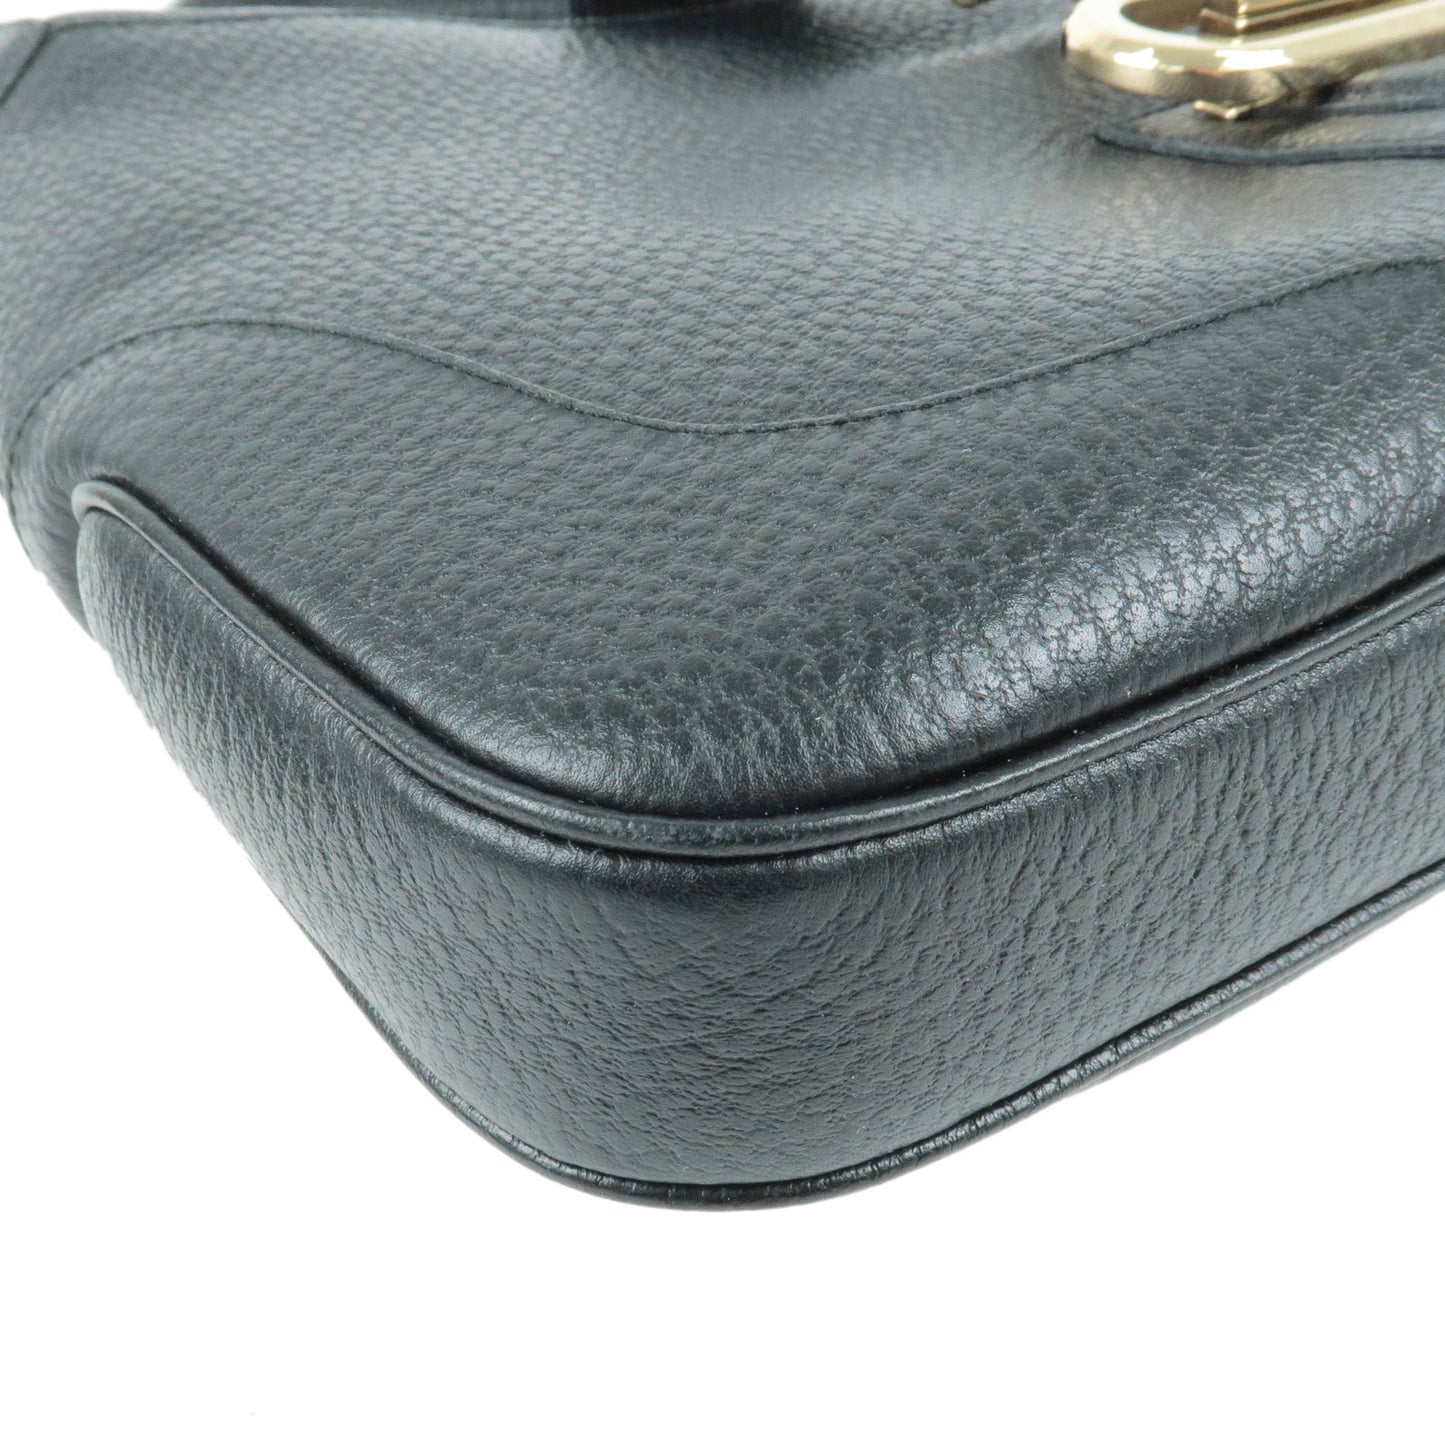 GUCCI Leather Shoulder Bag Hand Bag Black 130779